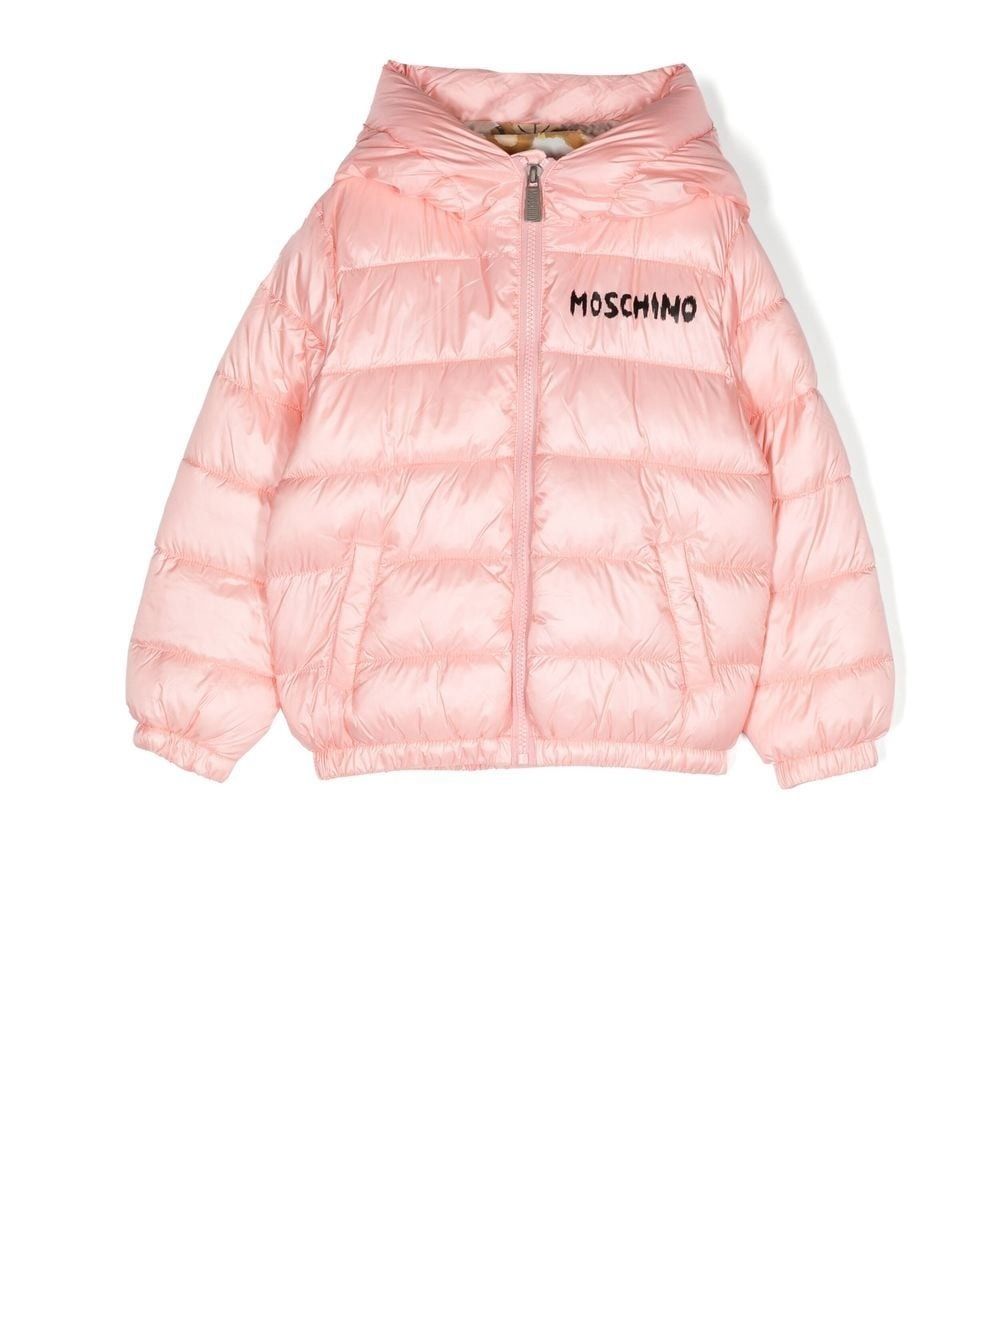 Moschino monogram-print puffer jacket - Pink